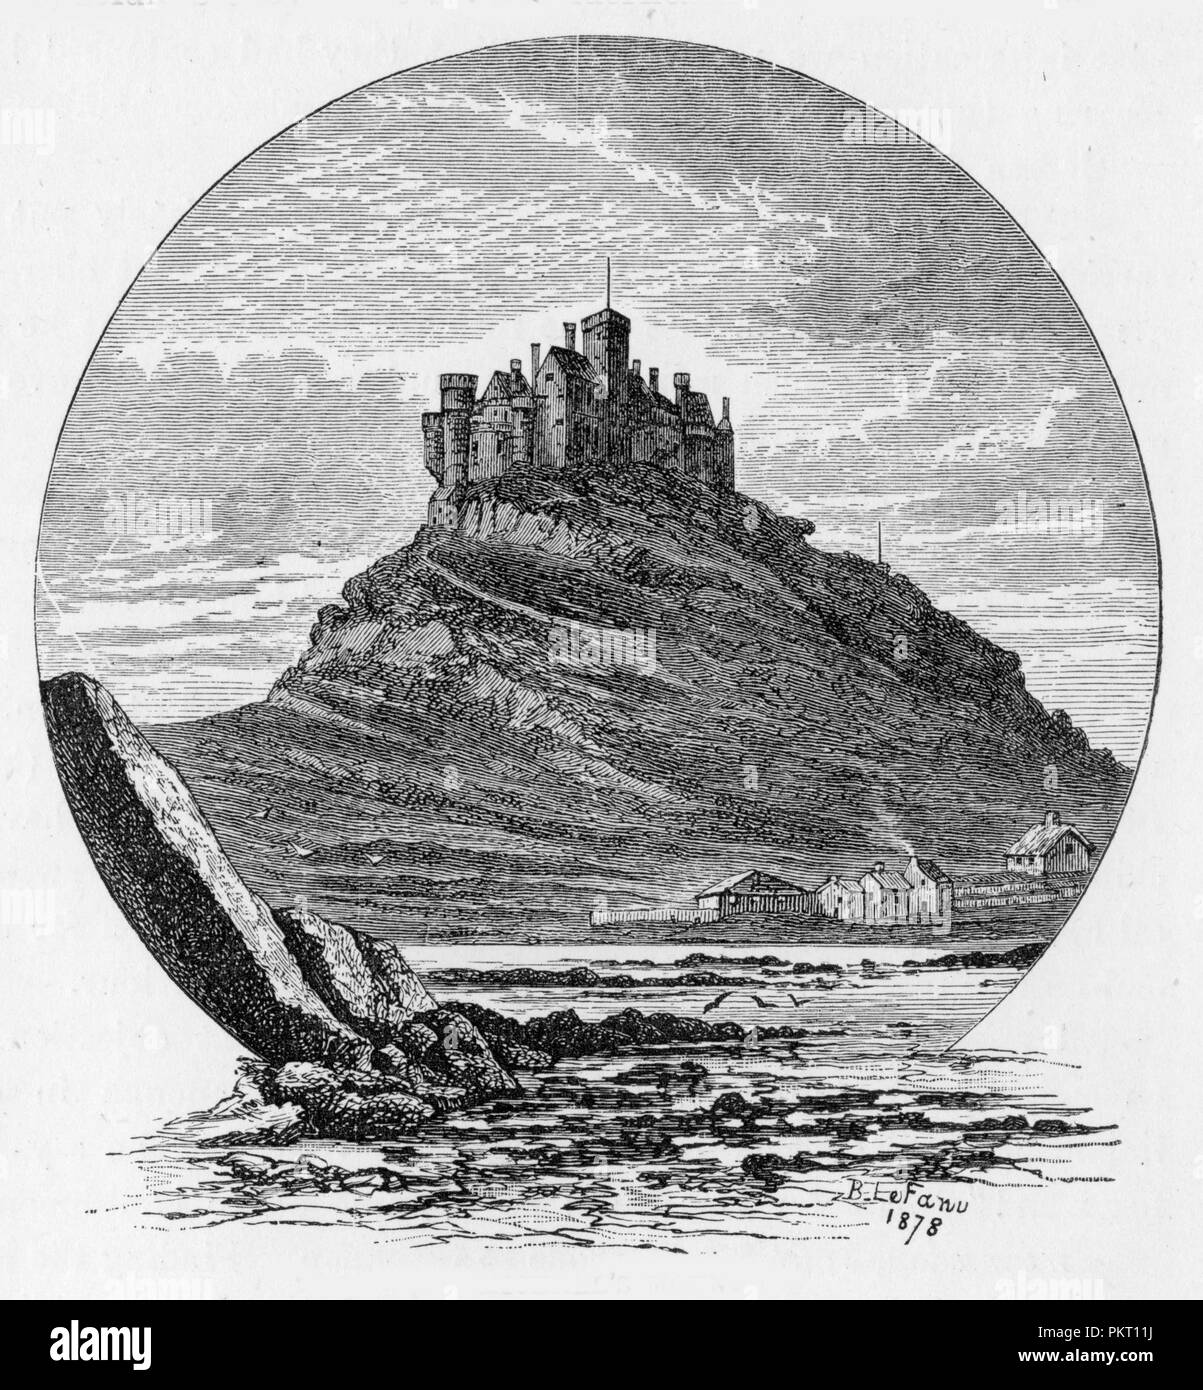 St Michael's Mount (Cornish : Karrek Loos yn Koos), une île à marée 366 mètres au large de la côte de la baie de montage de Cornwall, Angleterre, Royaume-Uni ; mode de sélection de The Journal de John Wesley, 1891 Banque D'Images